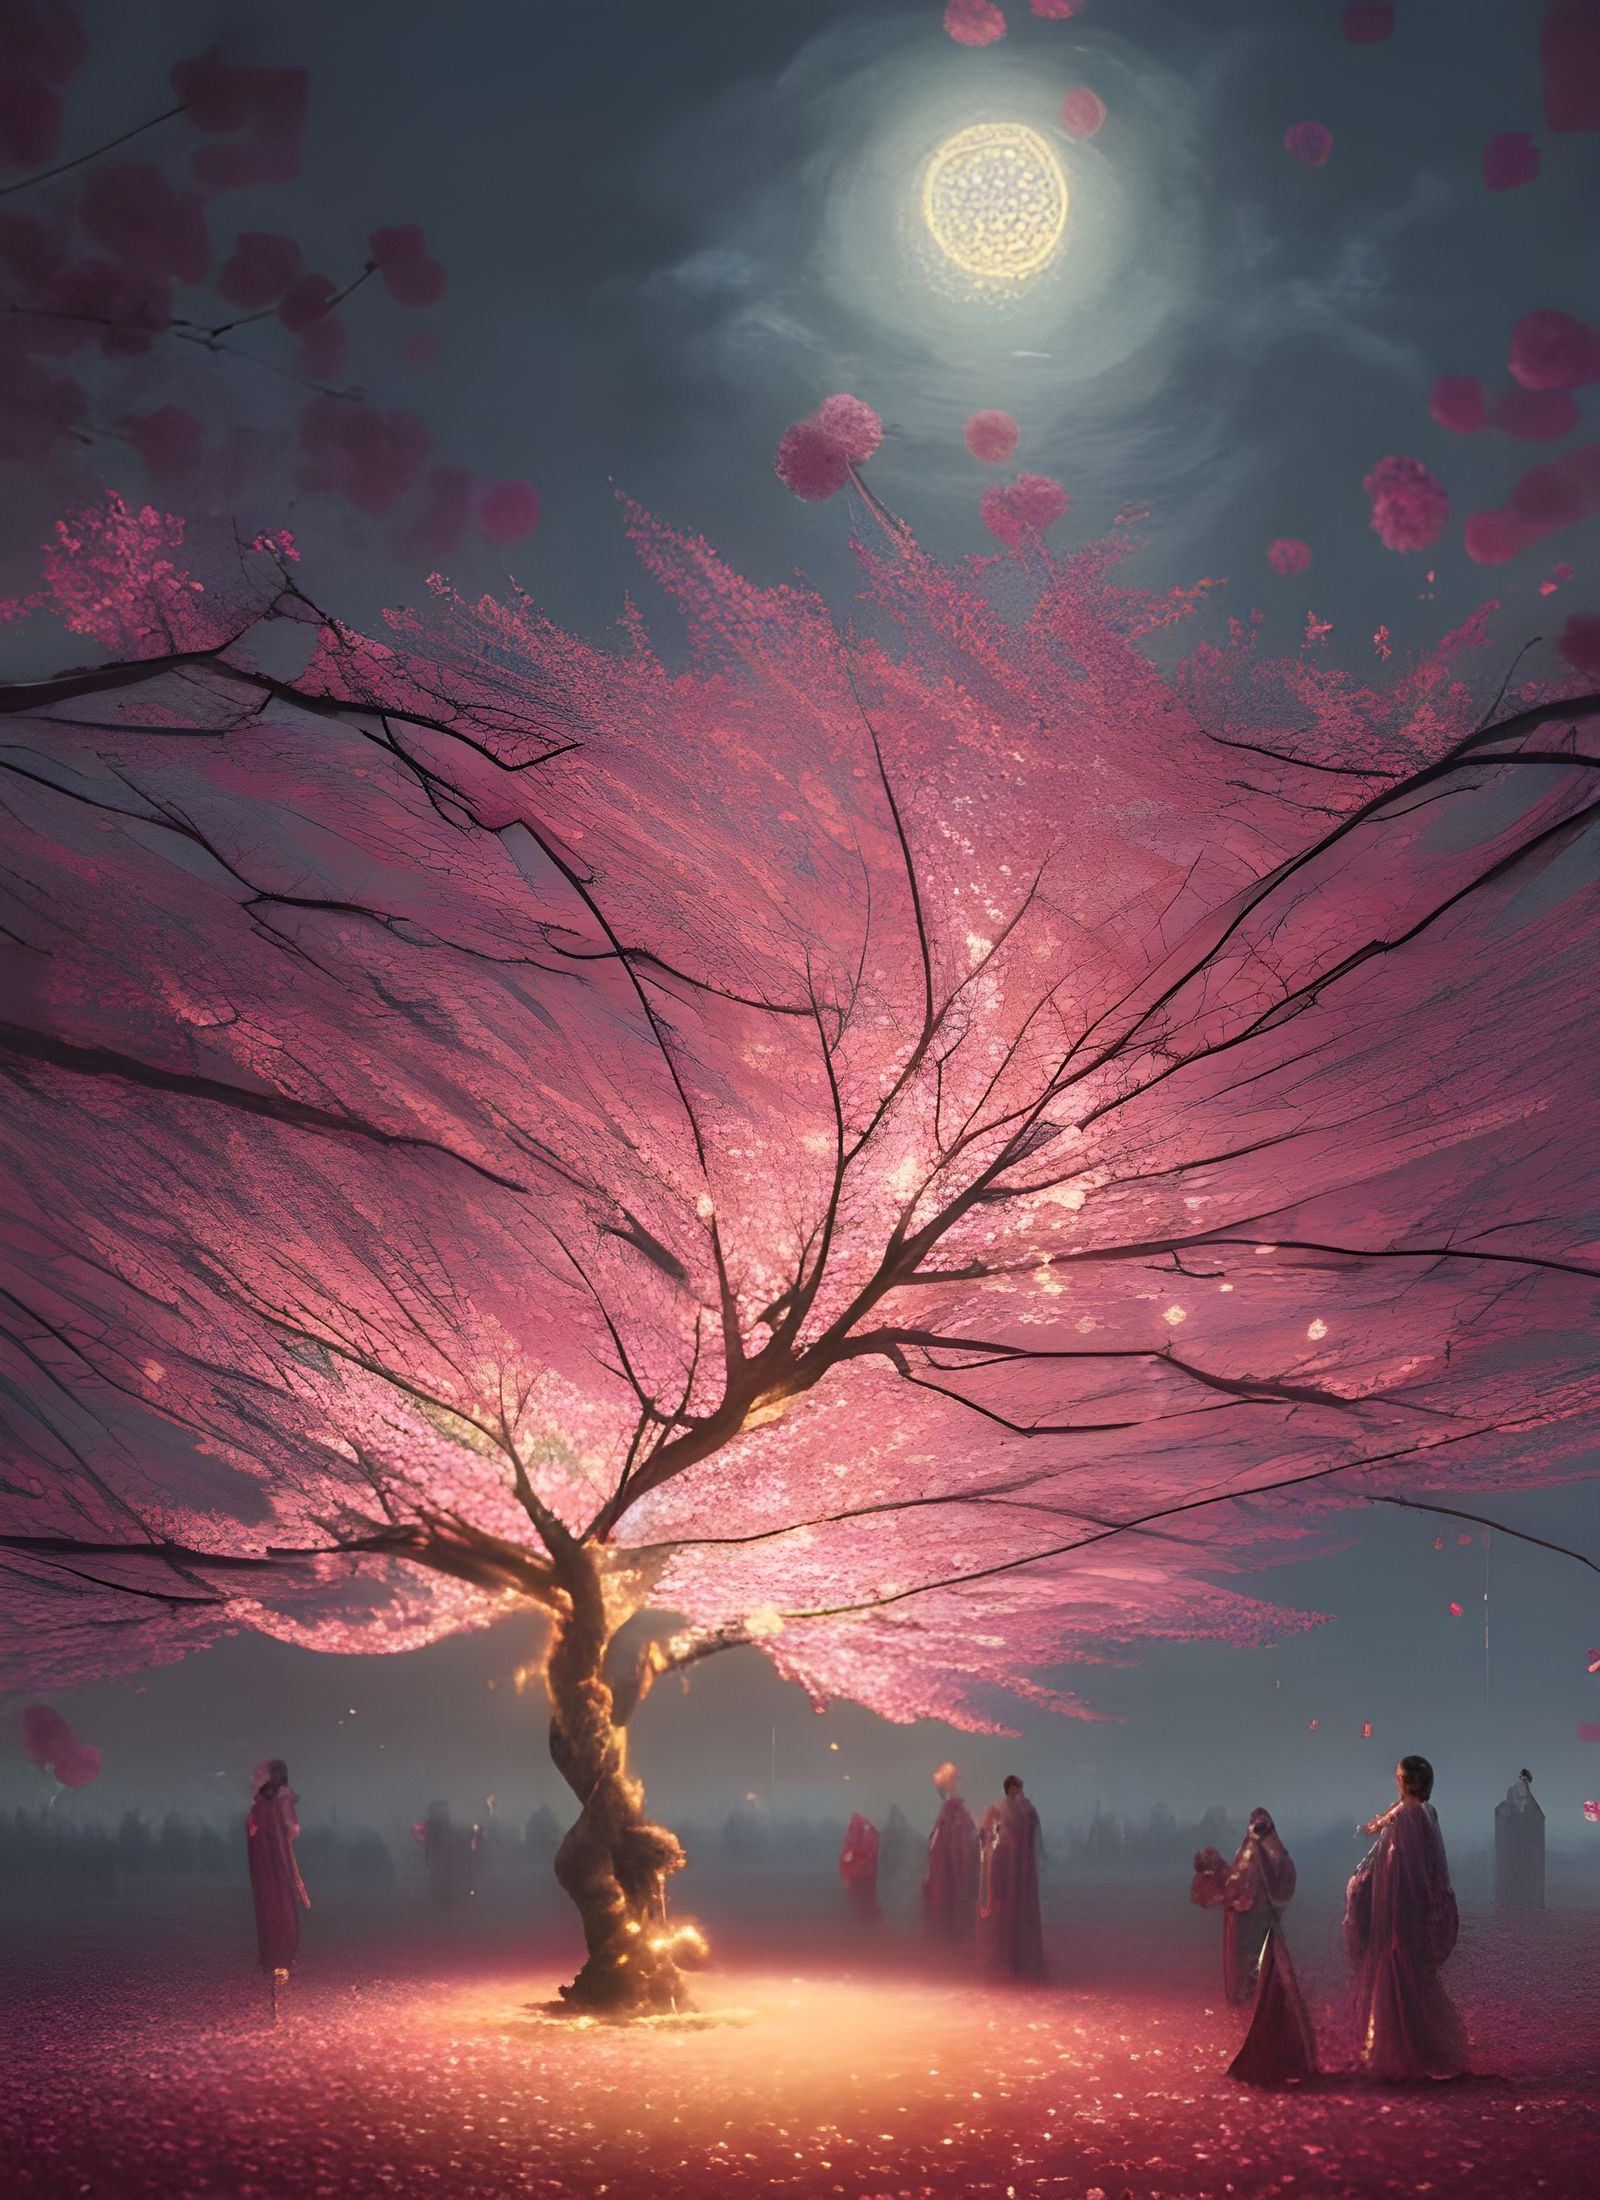 Uba-zakura, the Legendary Tree of Japan